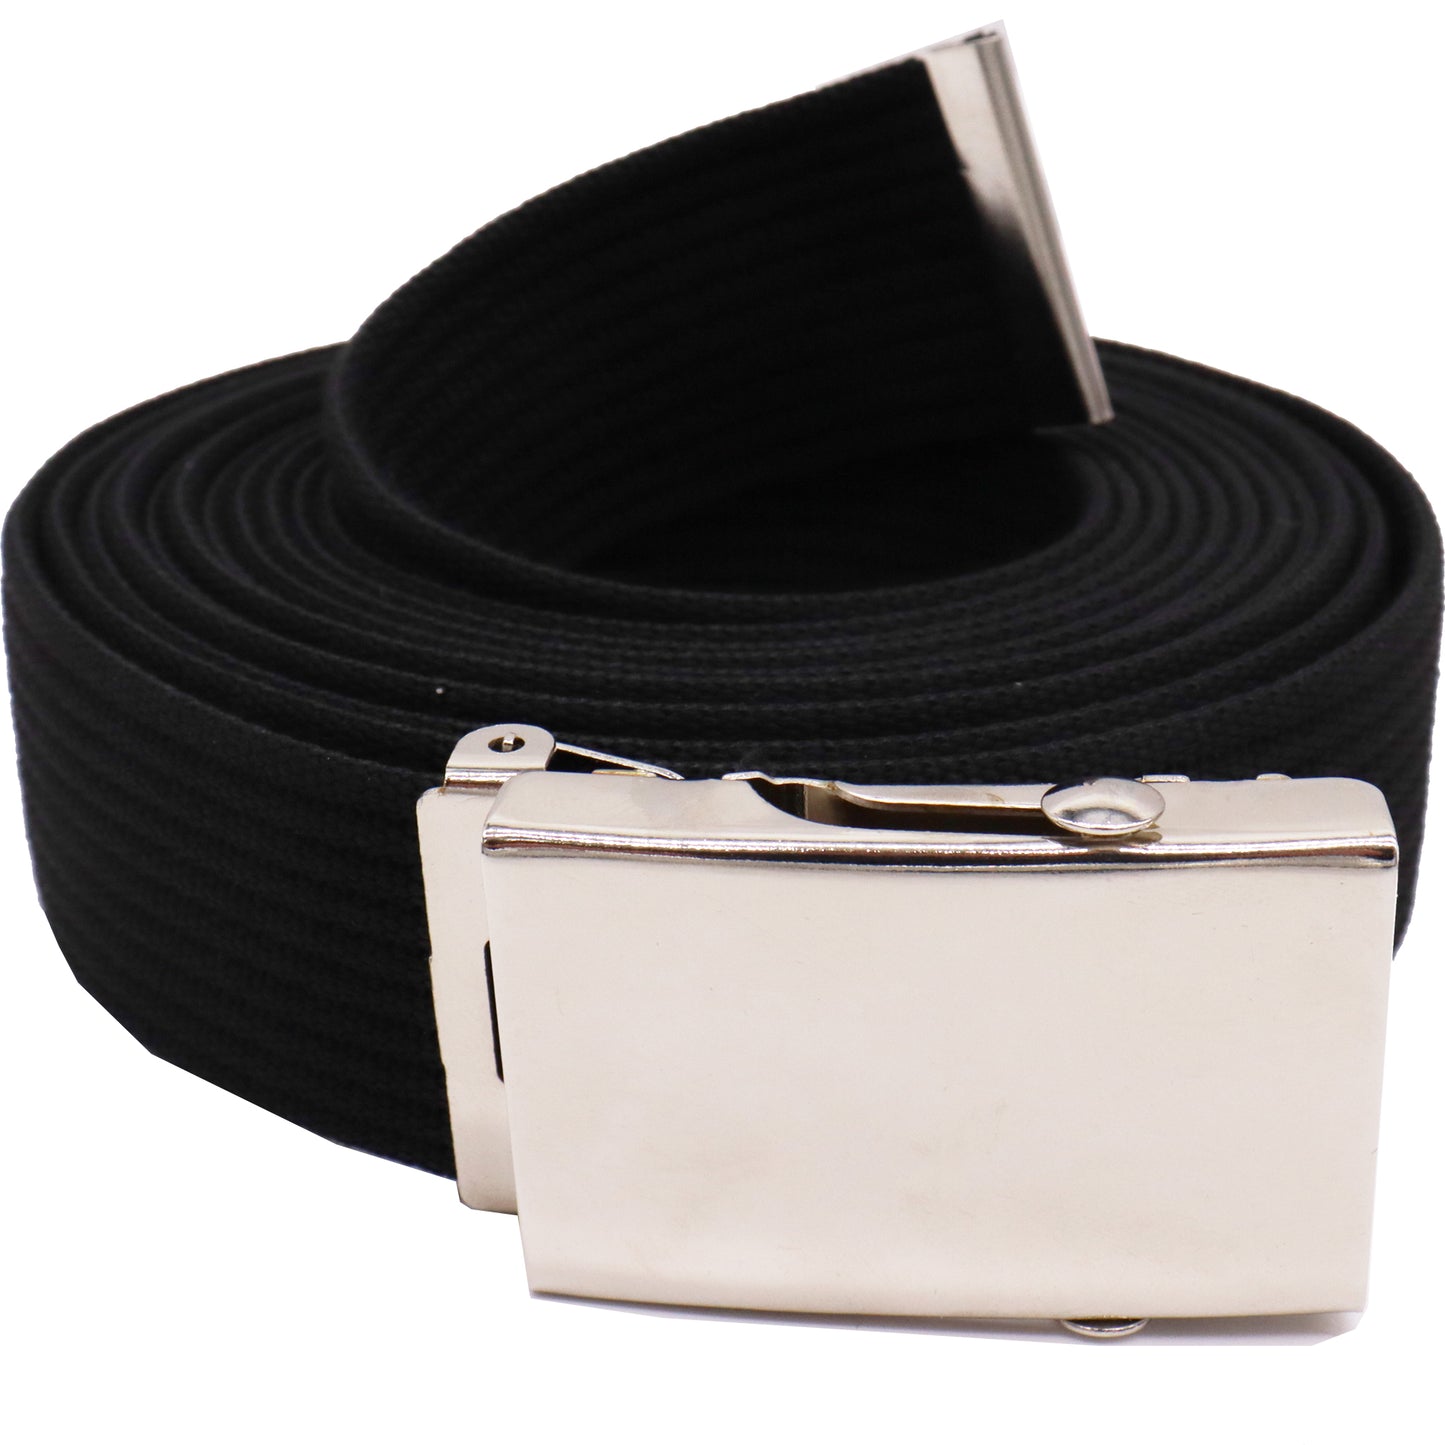 Safekeepers elastische riem -  Stretch Riem - Gevlochten Zwart en Tactical belt - Koppelriem - 2 Stuks -  Zwart